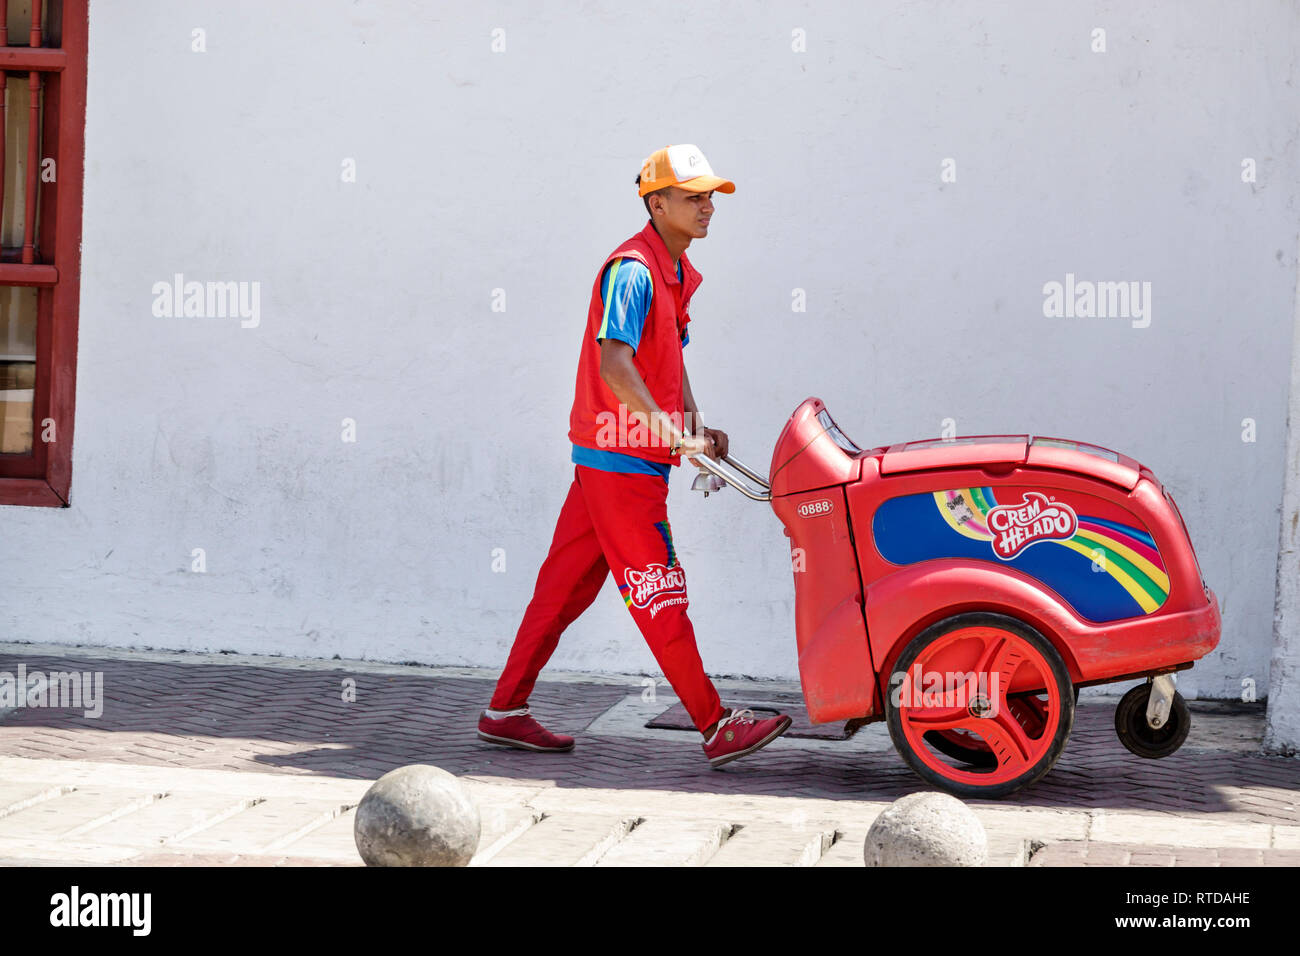 Cartagena Colombia,residenti ispanici,distributore di gelati carrello mobile CREM Helado,uomo uomo maschio,giovane adulto,spingere,uniforme,lavoro,COL190119107 Foto Stock